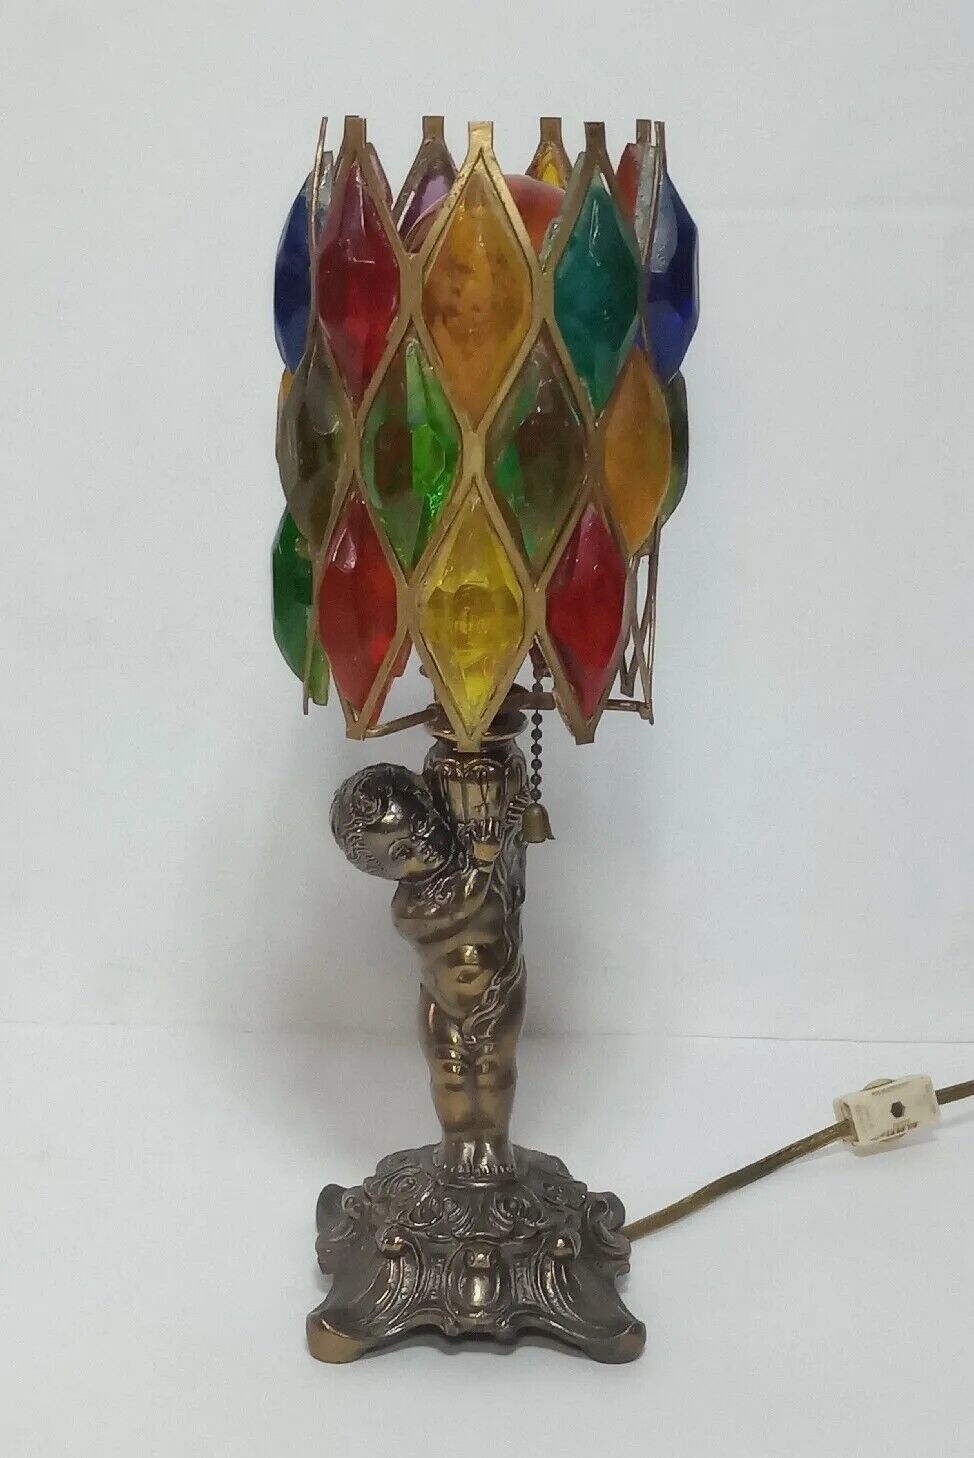 VTG L&L WMC Cherub Brass Desk Lamp Working Colorful plastic Diamond Pattern READ